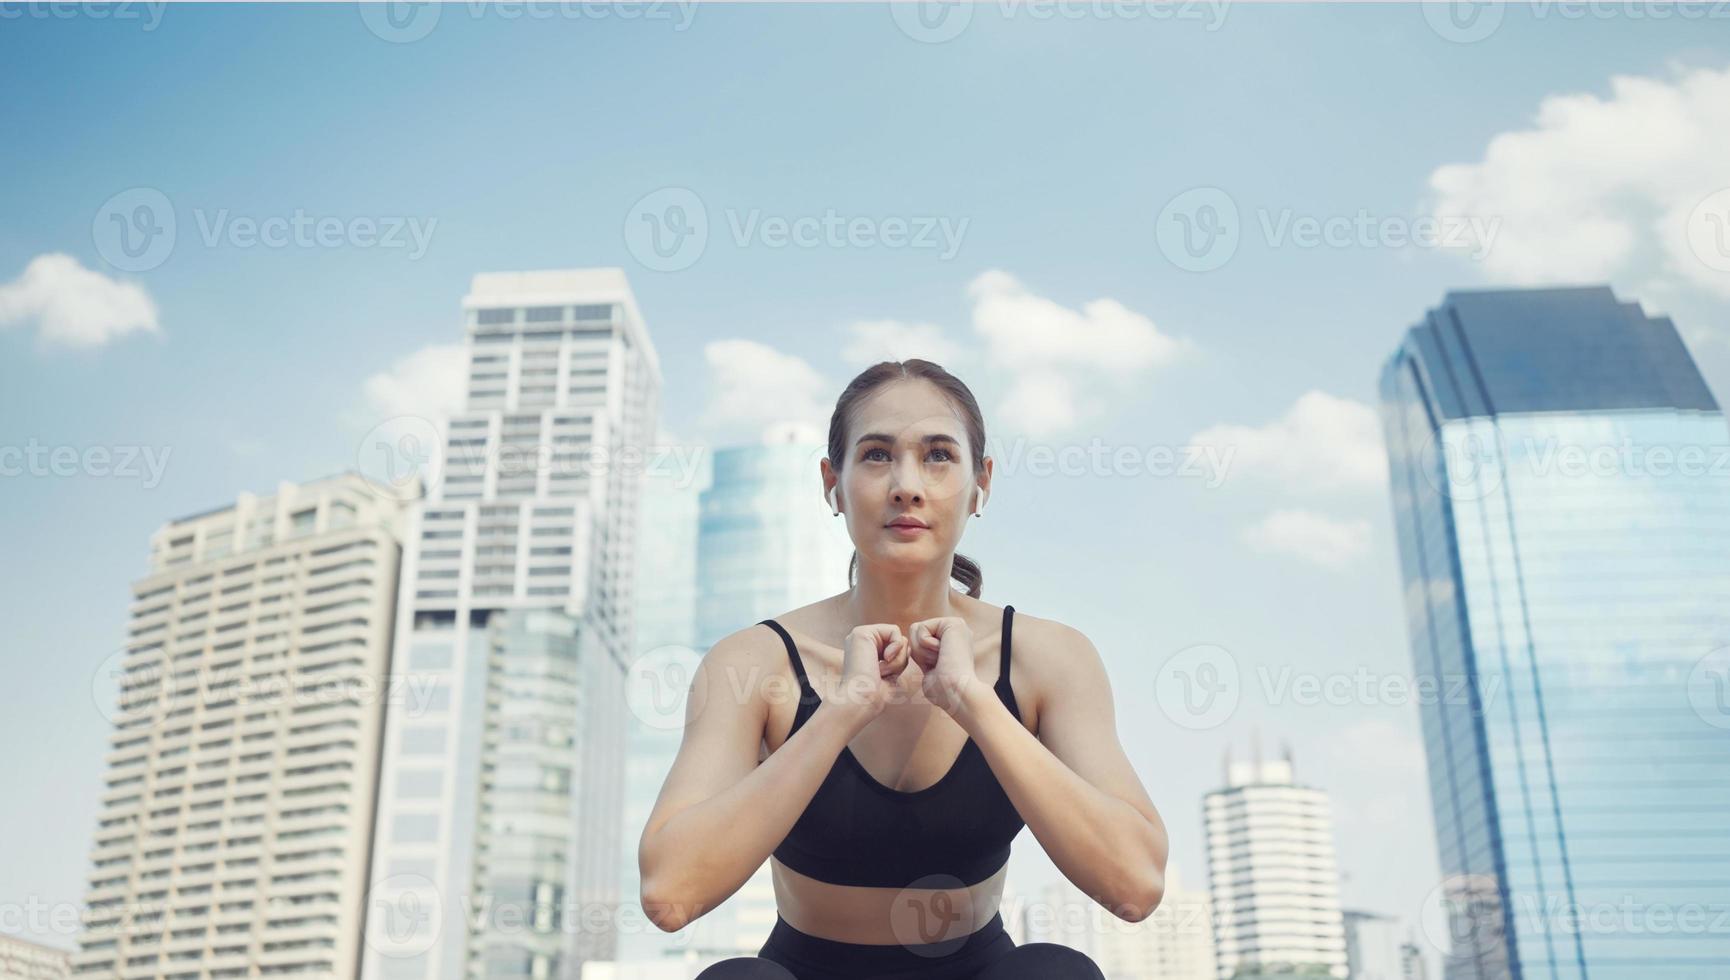 sportvrouw die hurkt om op te warmen voor fitnesstraining. atleet vrouw doet stretching oefening in stadsstraat in de buurt van gebouwen met meerdere verdiepingen. foto